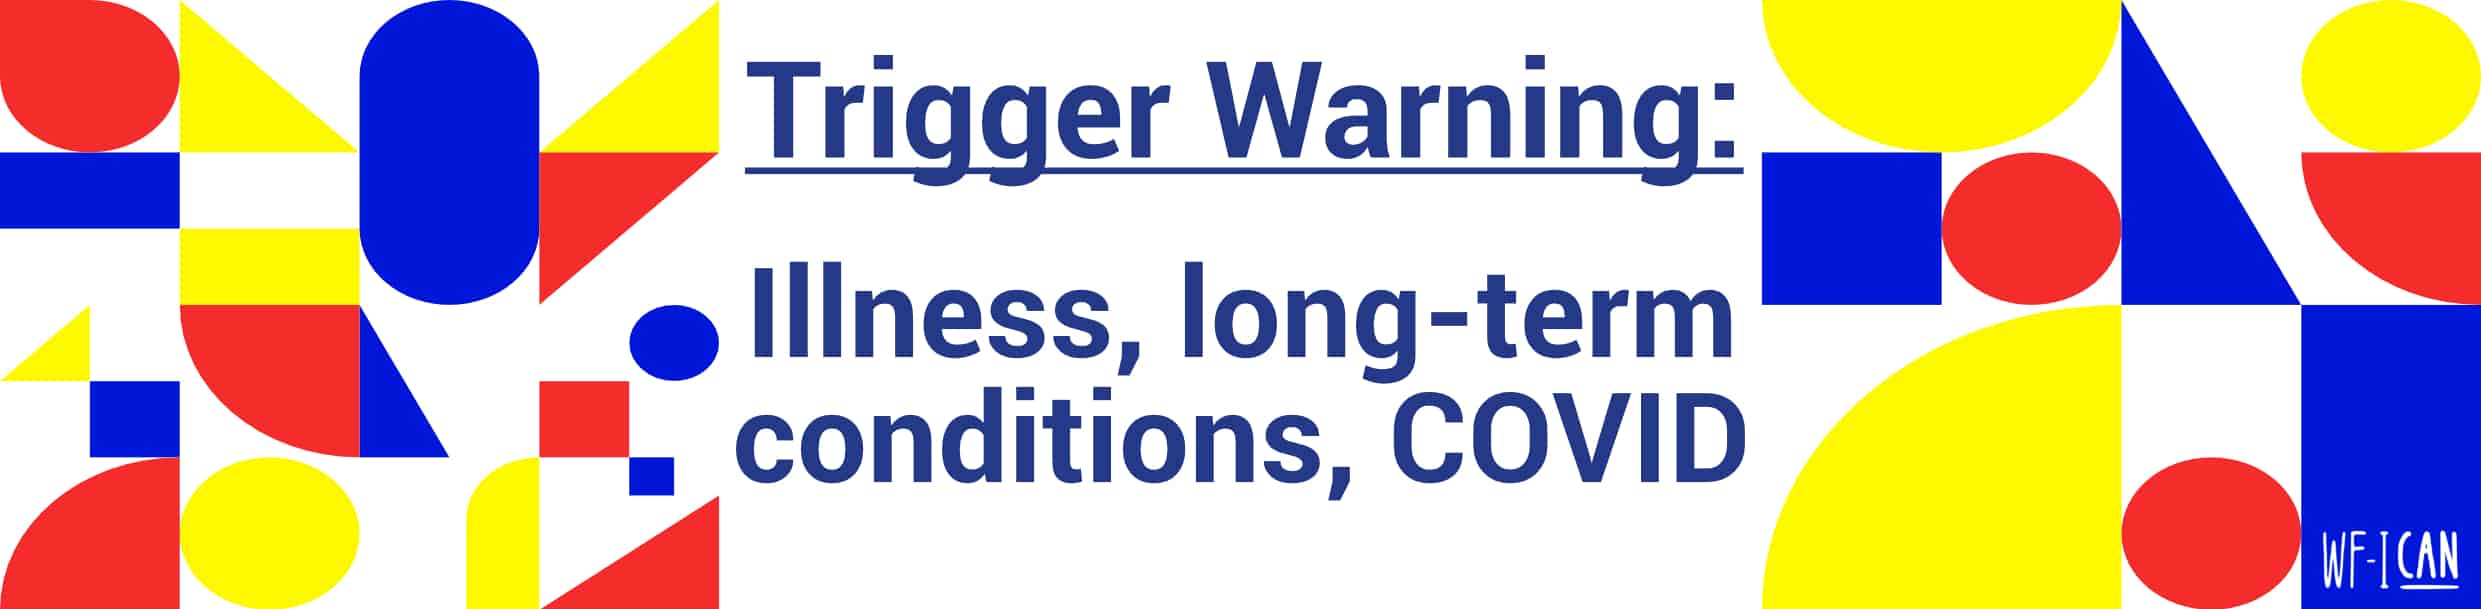 trigger warning covid